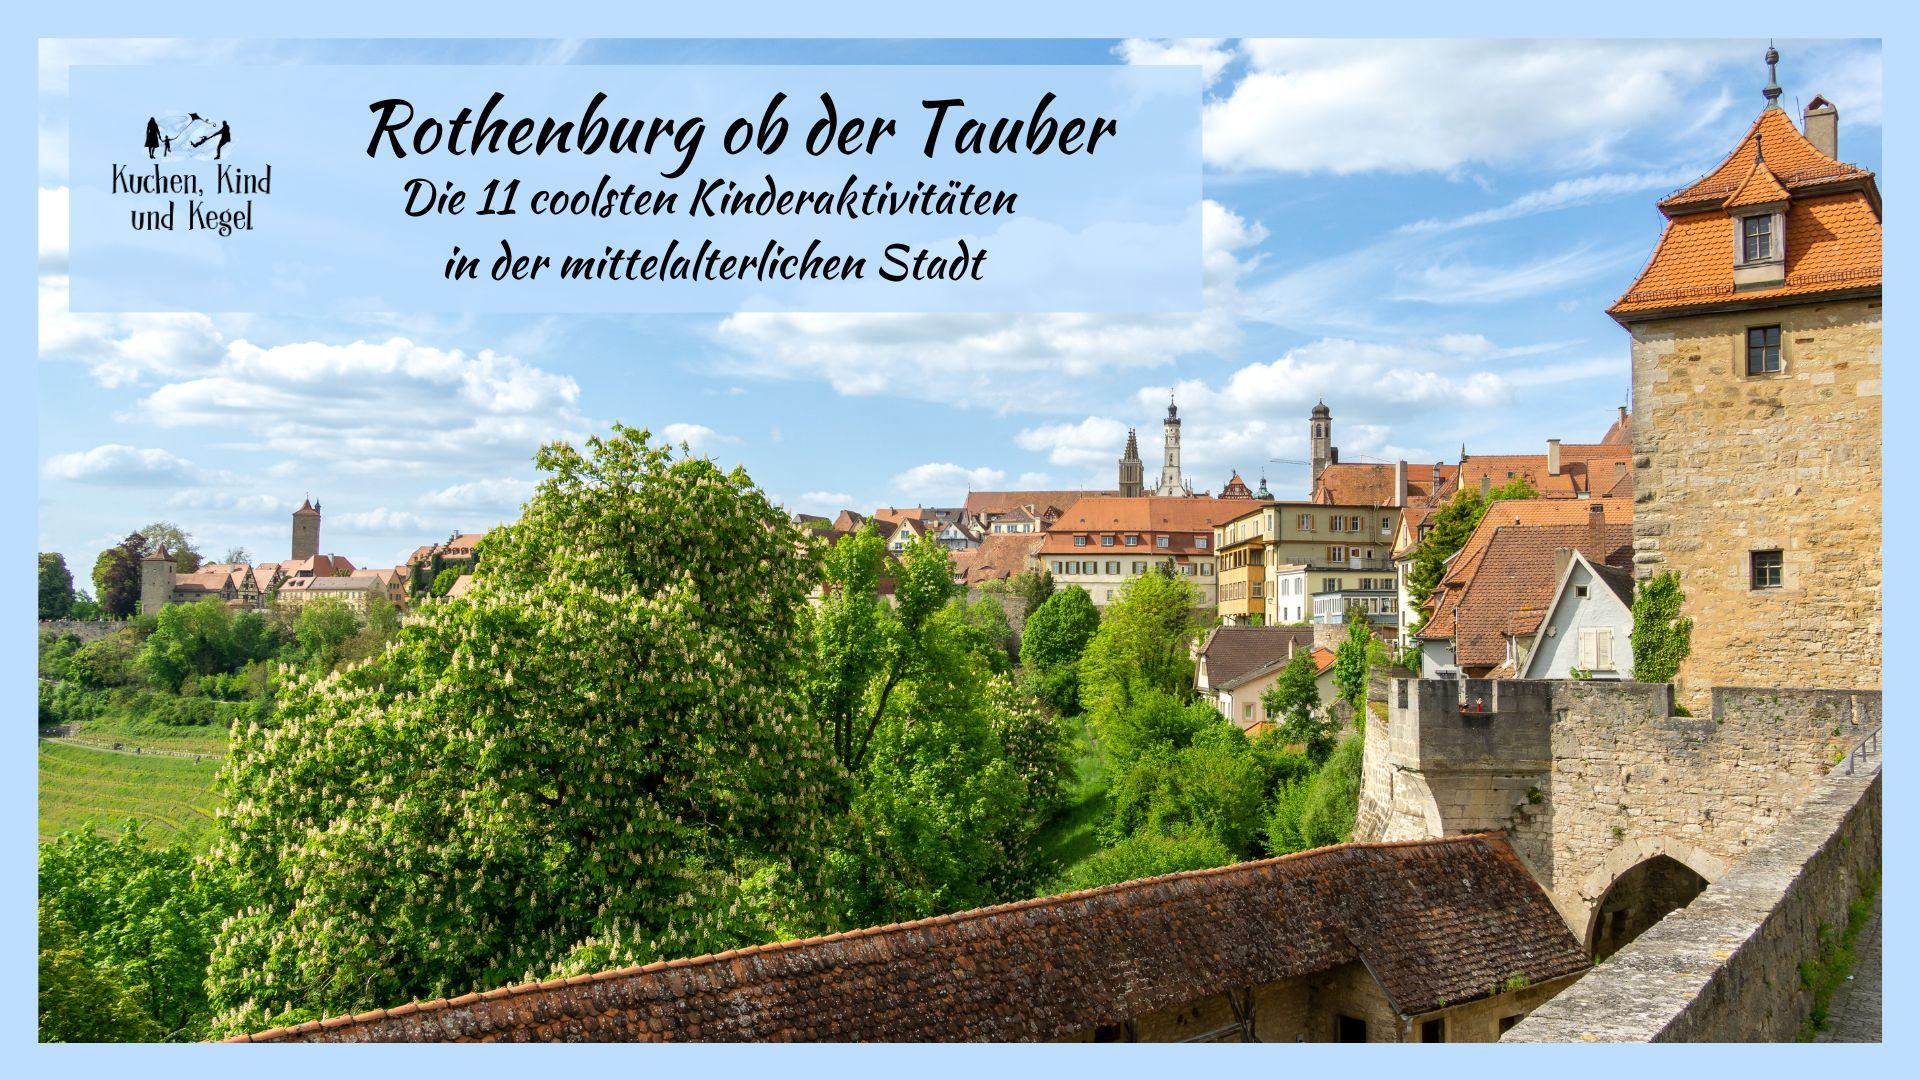 Rothenburg ob der Tauber: Die 11 coolsten Kinderaktivitäten in der mittelalterlichen Stadt!